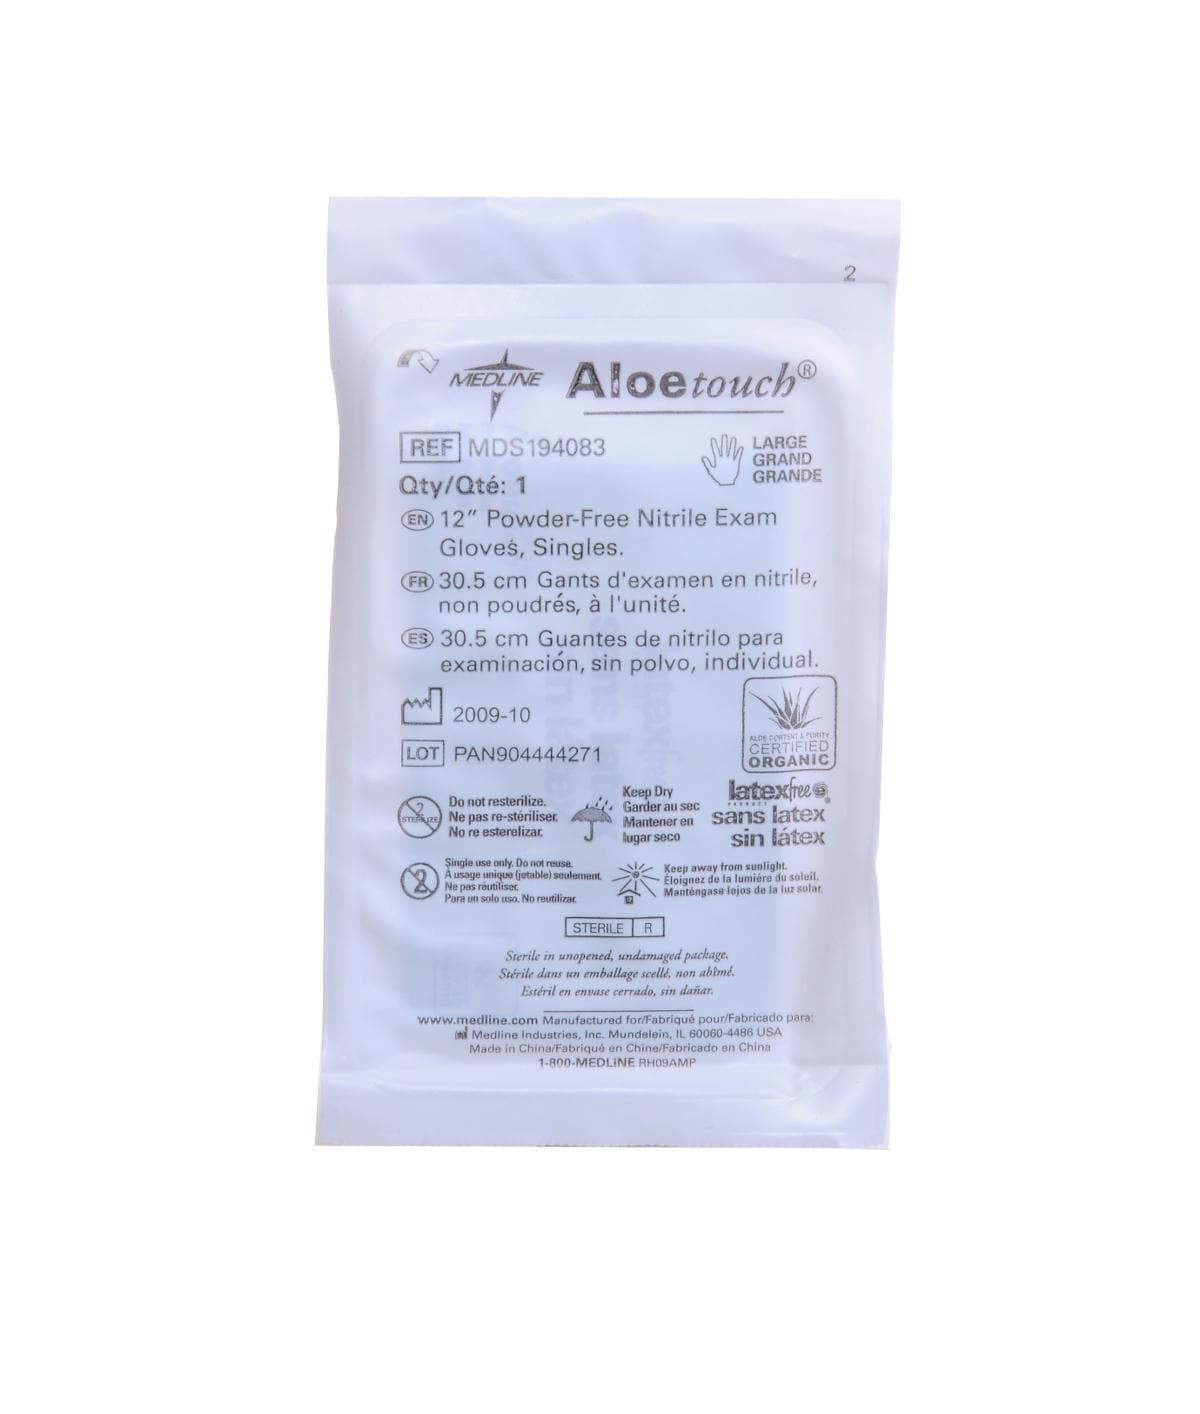 Medline S / Box of 100 Medline AloeTouch Sterile 12" Powder-Free Nitrile Exam Gloves